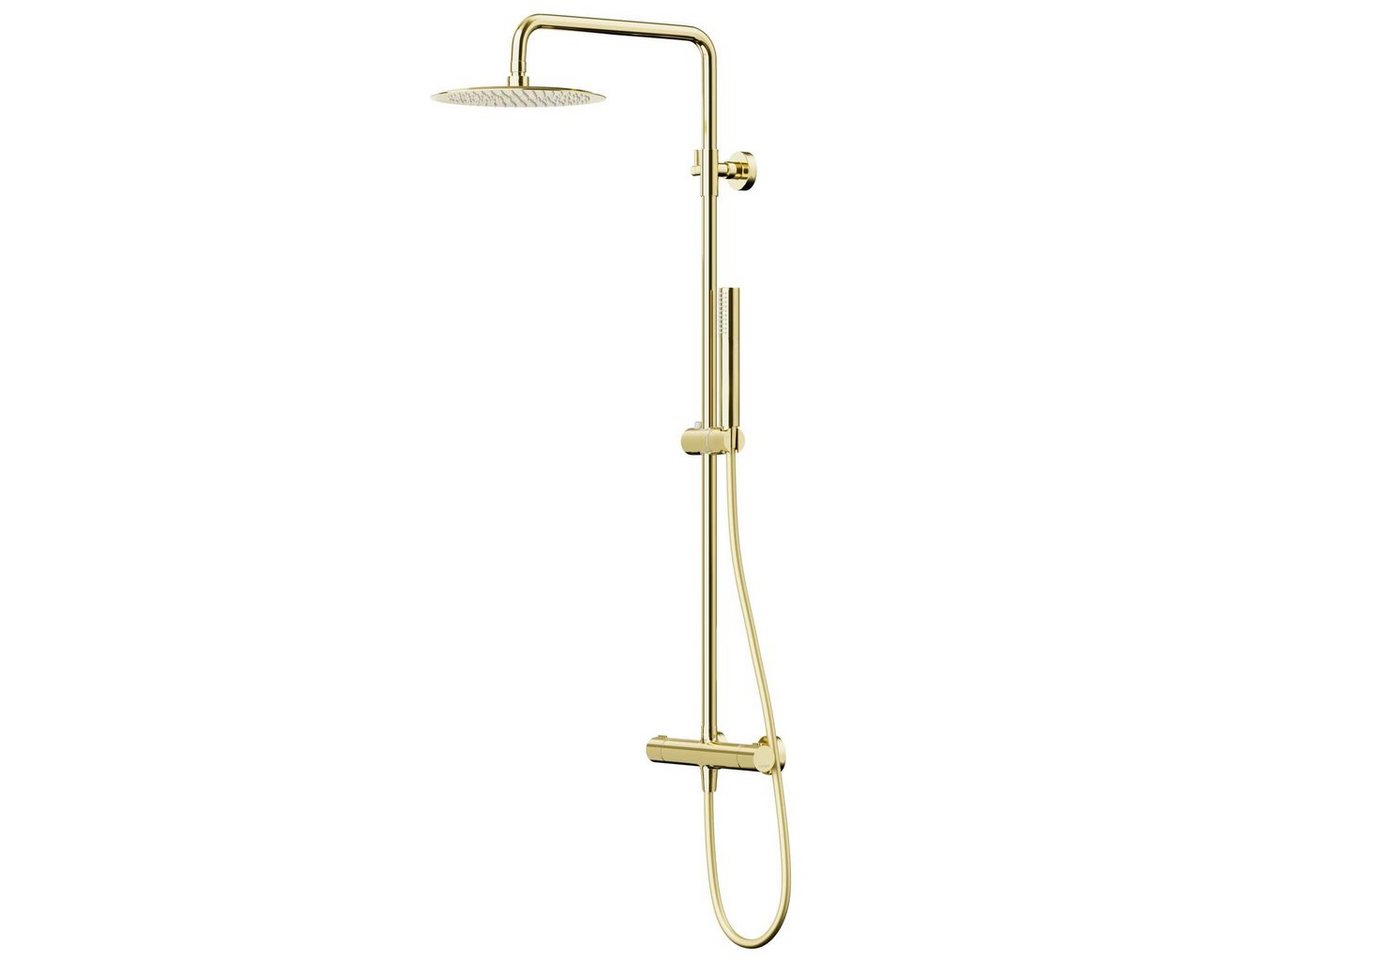 KOLMAN Duschsystem LUGO Thermostatisch Brausegarnitur Regendusche in Gold, Höhe 180 cm, in Gold von KOLMAN